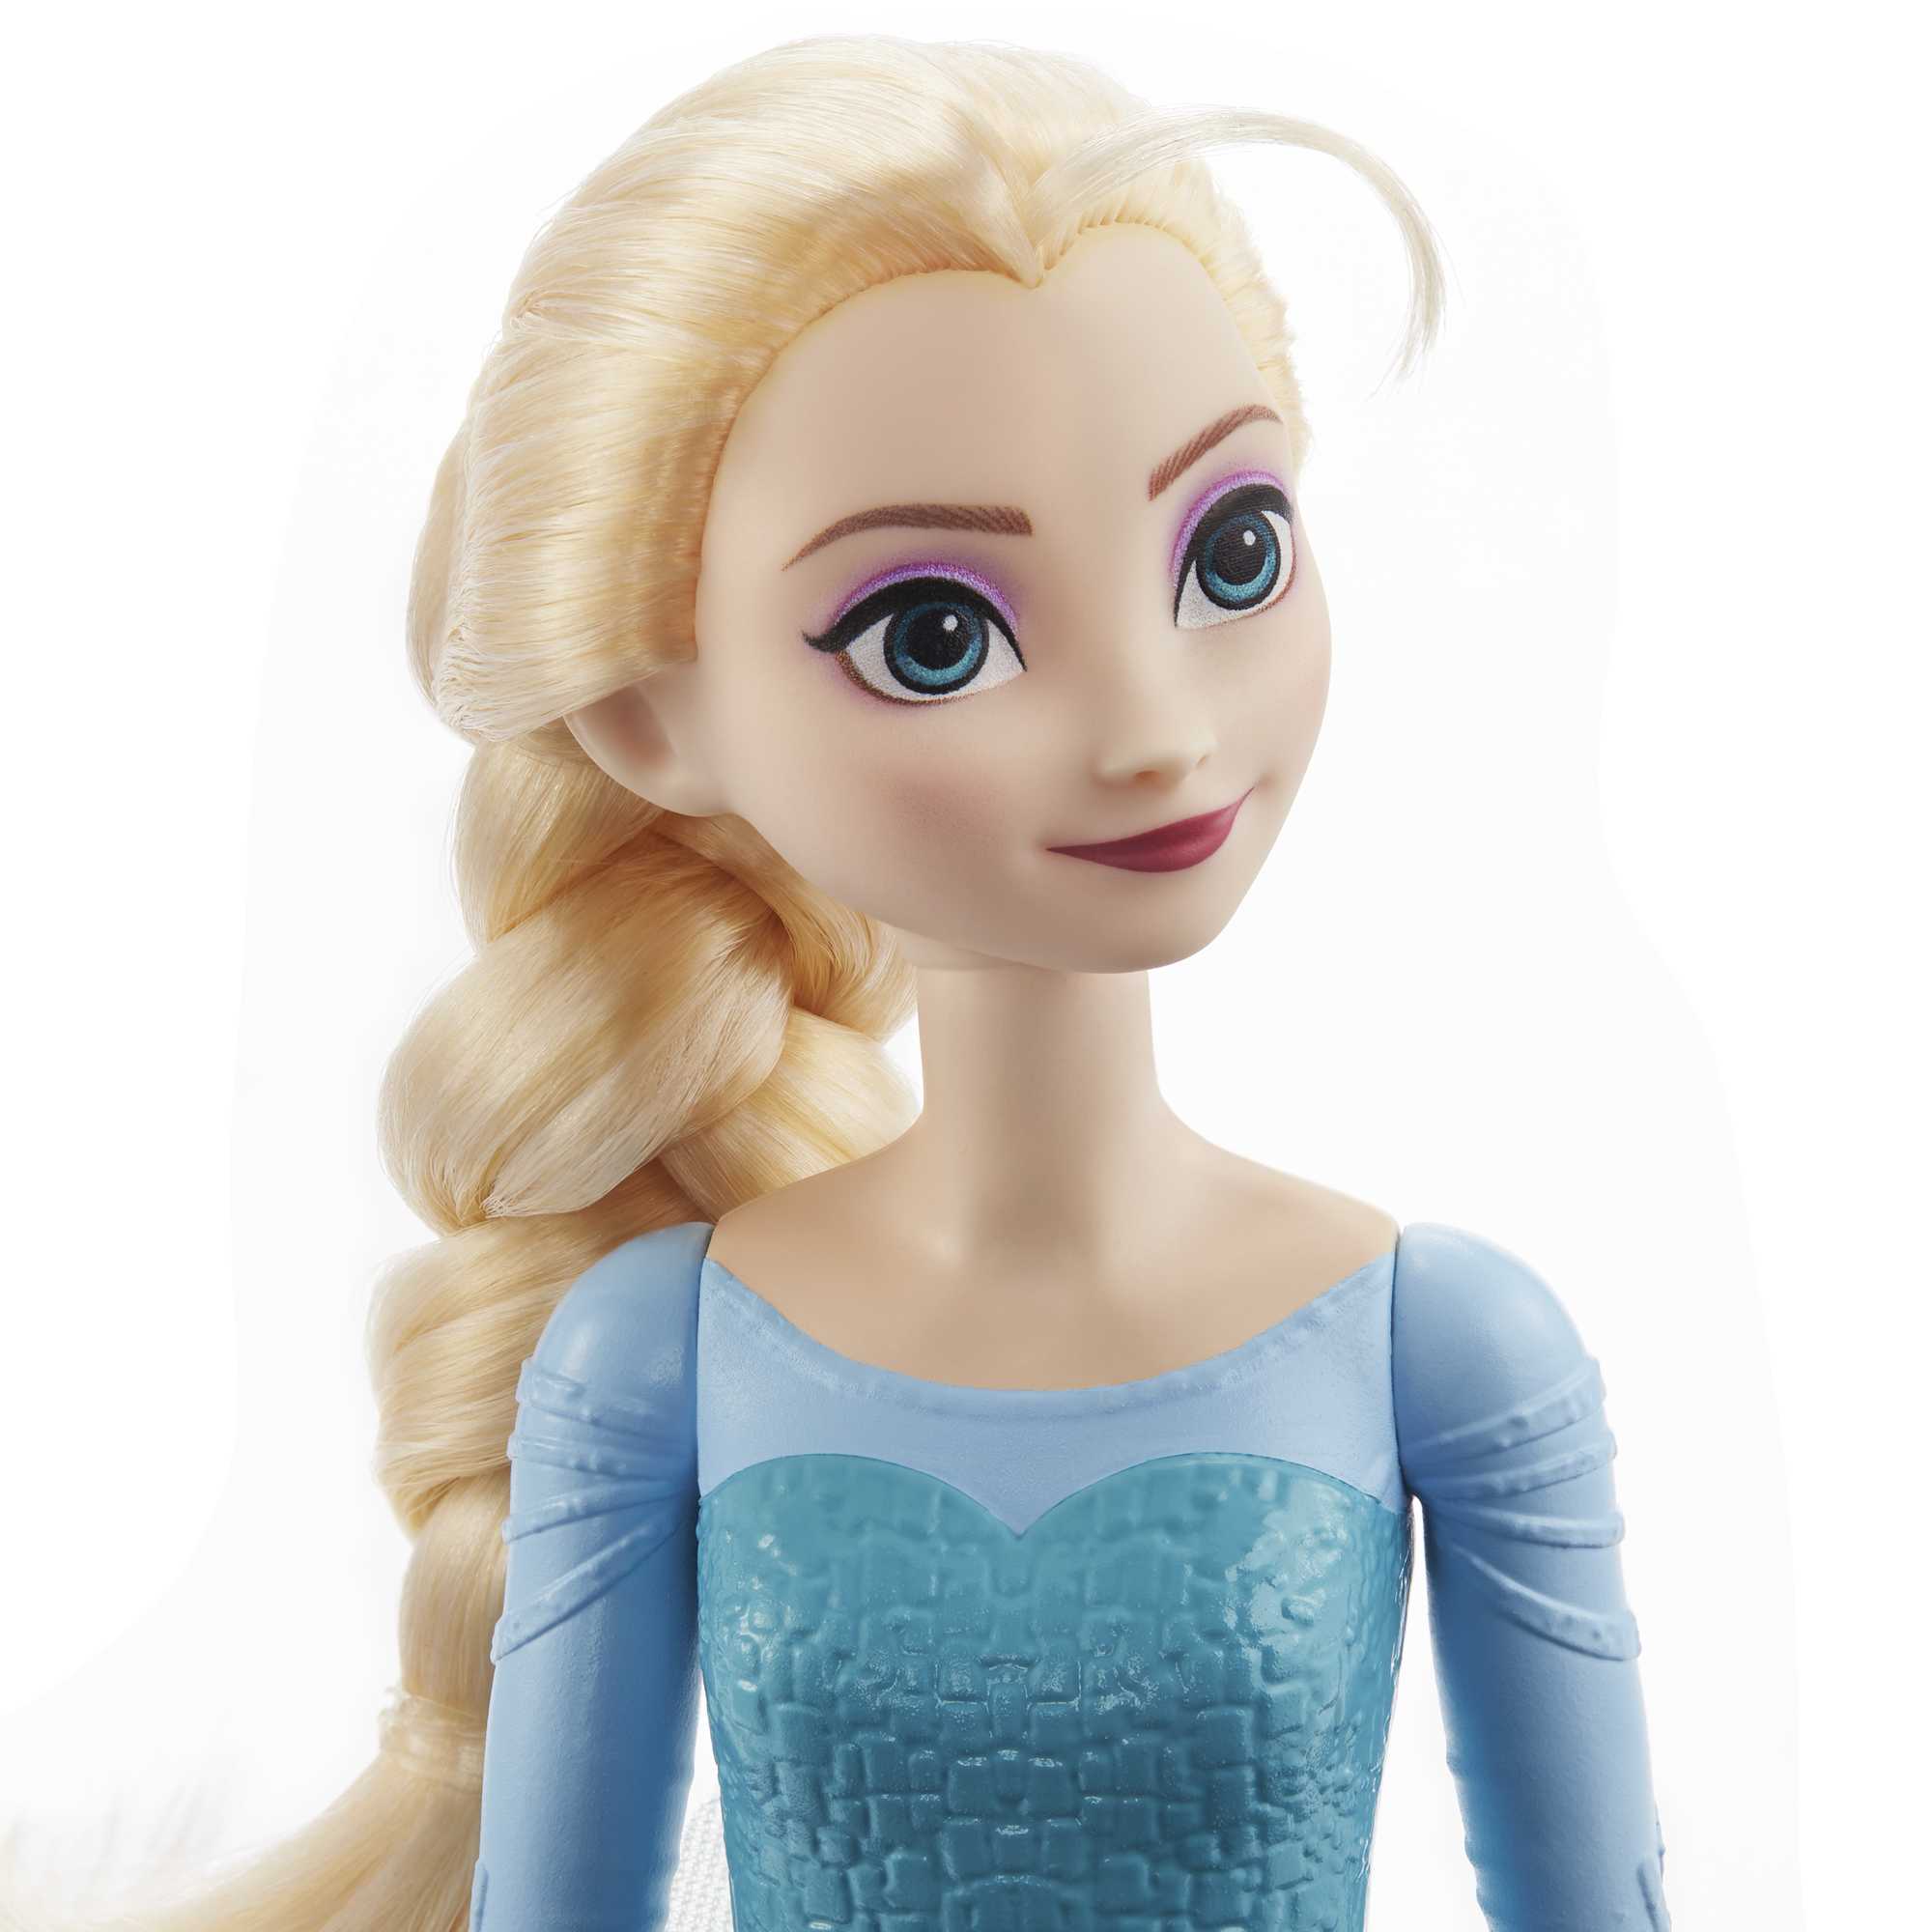 Disney Frozen Boneca Set de Histórias 6 Figuras